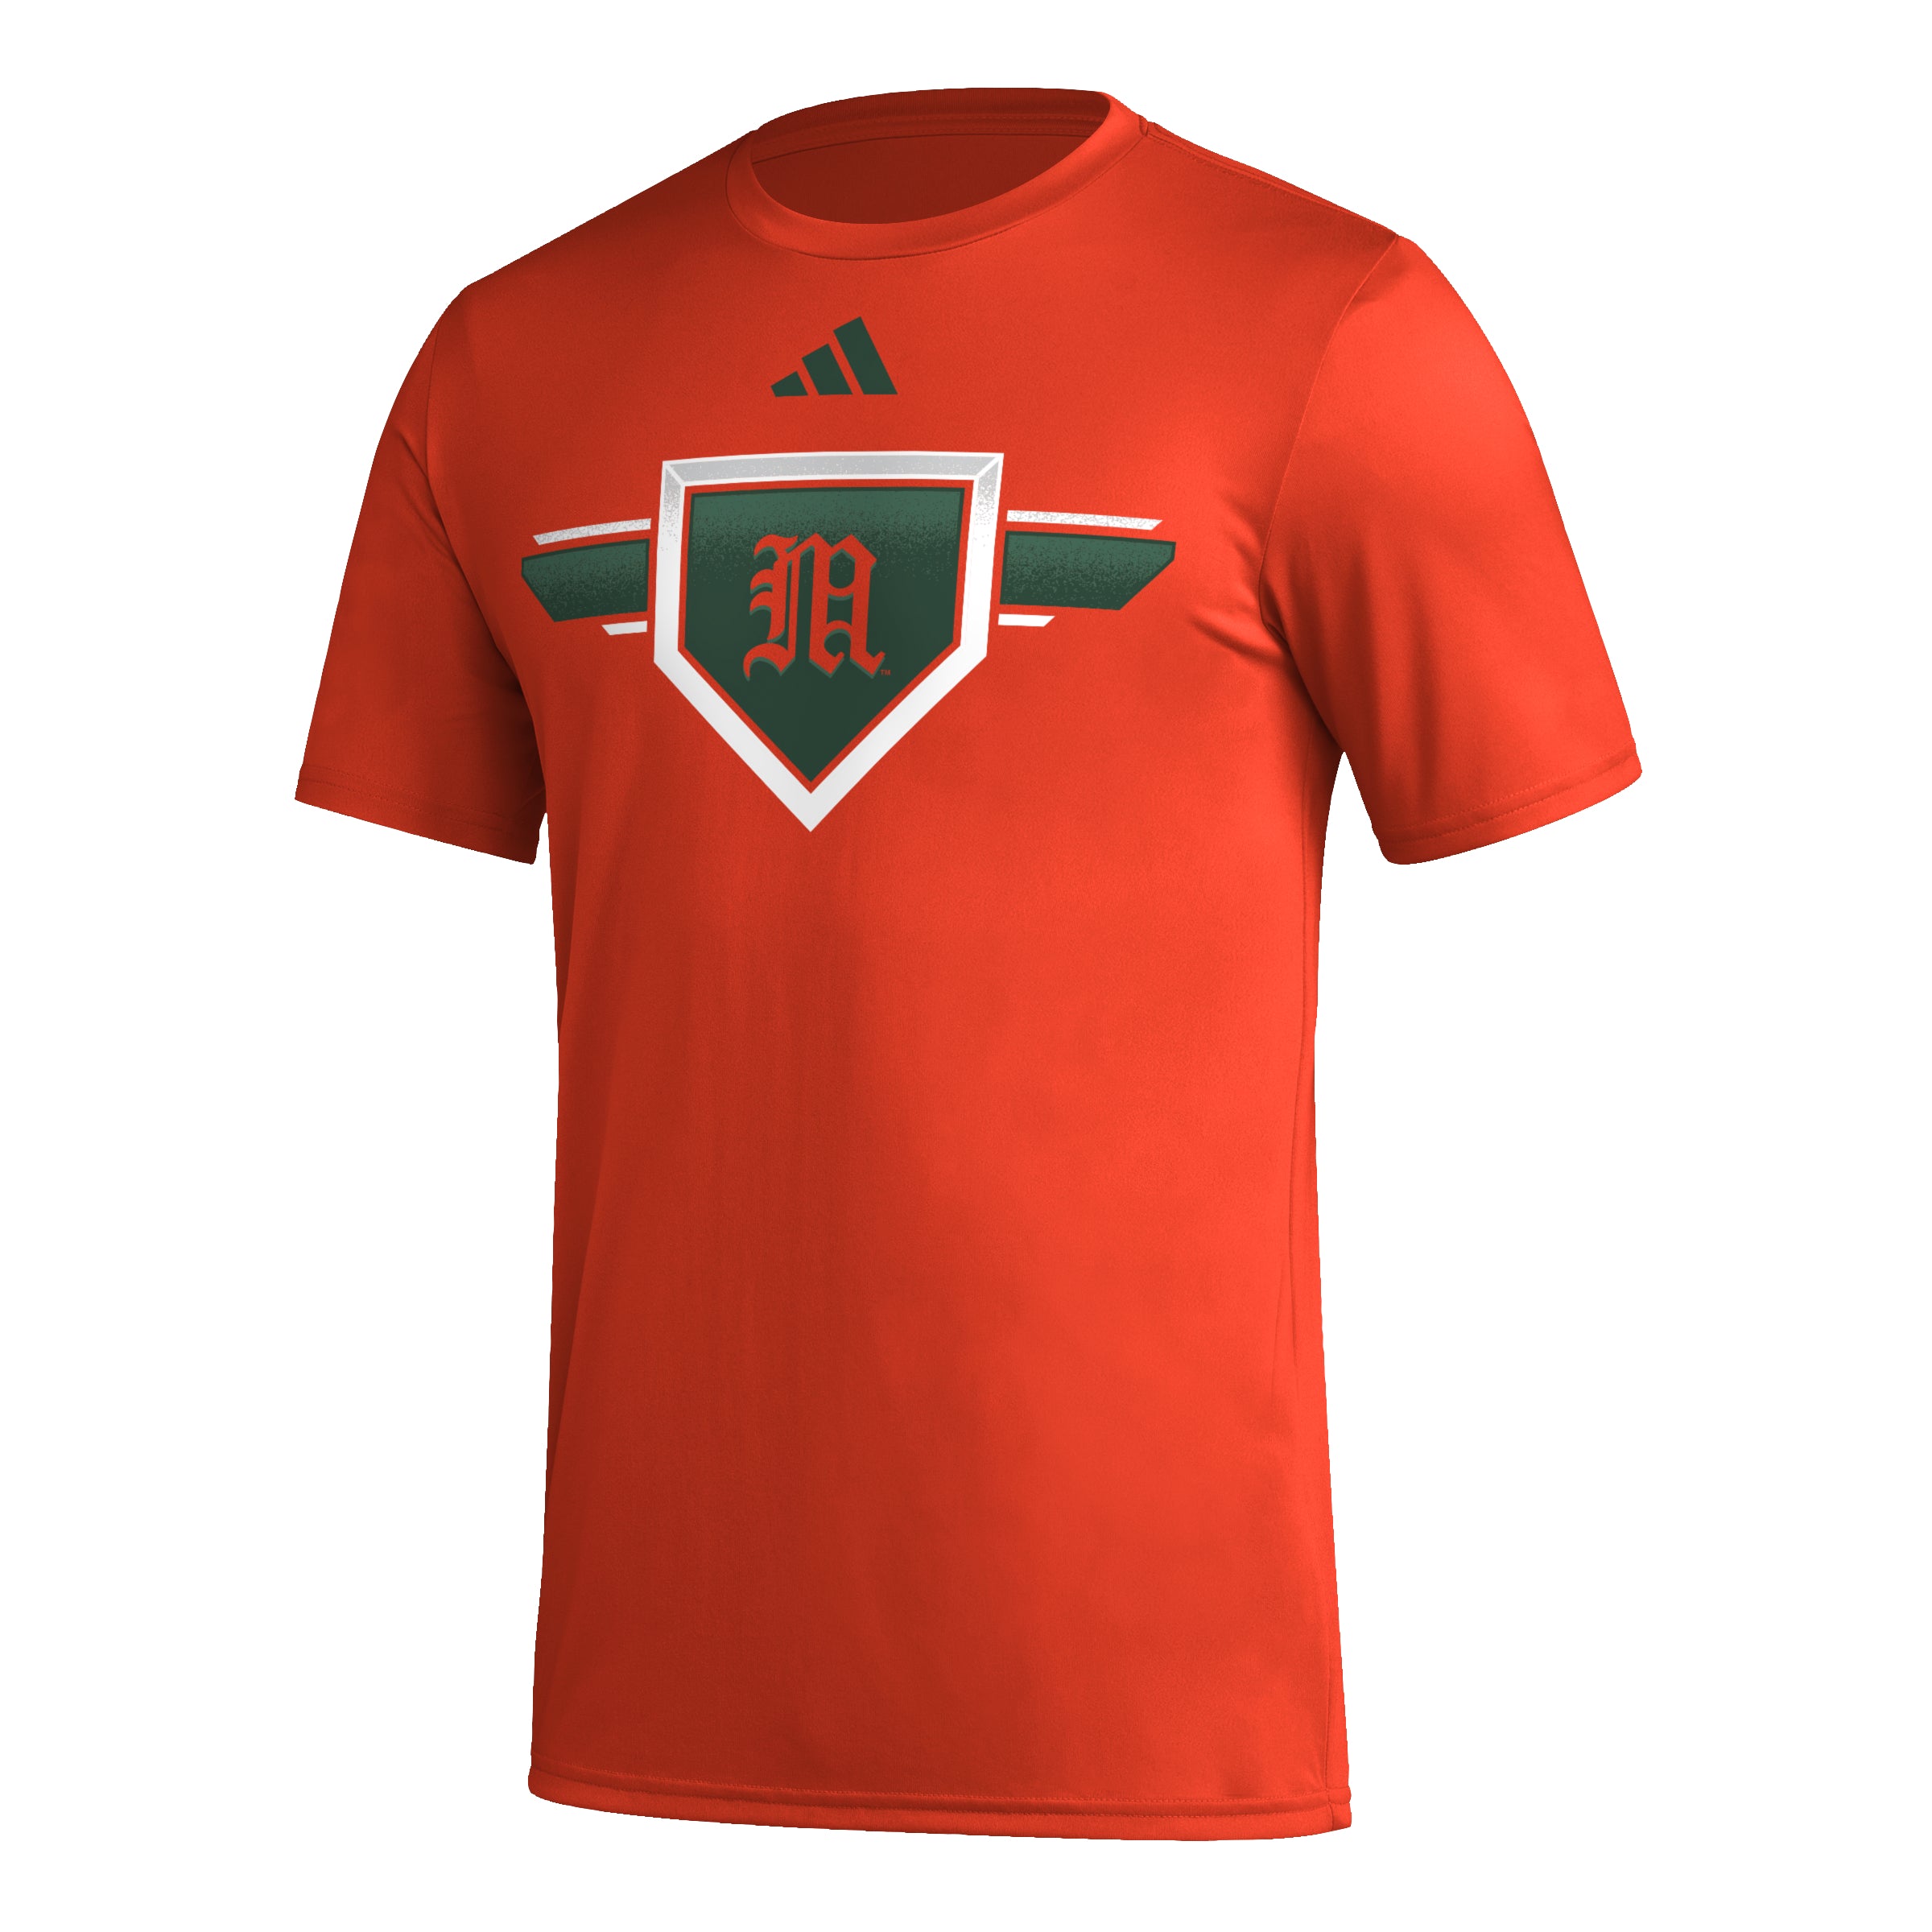 Miami Hurricanes adidas Baseball Diamond Pregame Aeroready T-Shirt - Orange